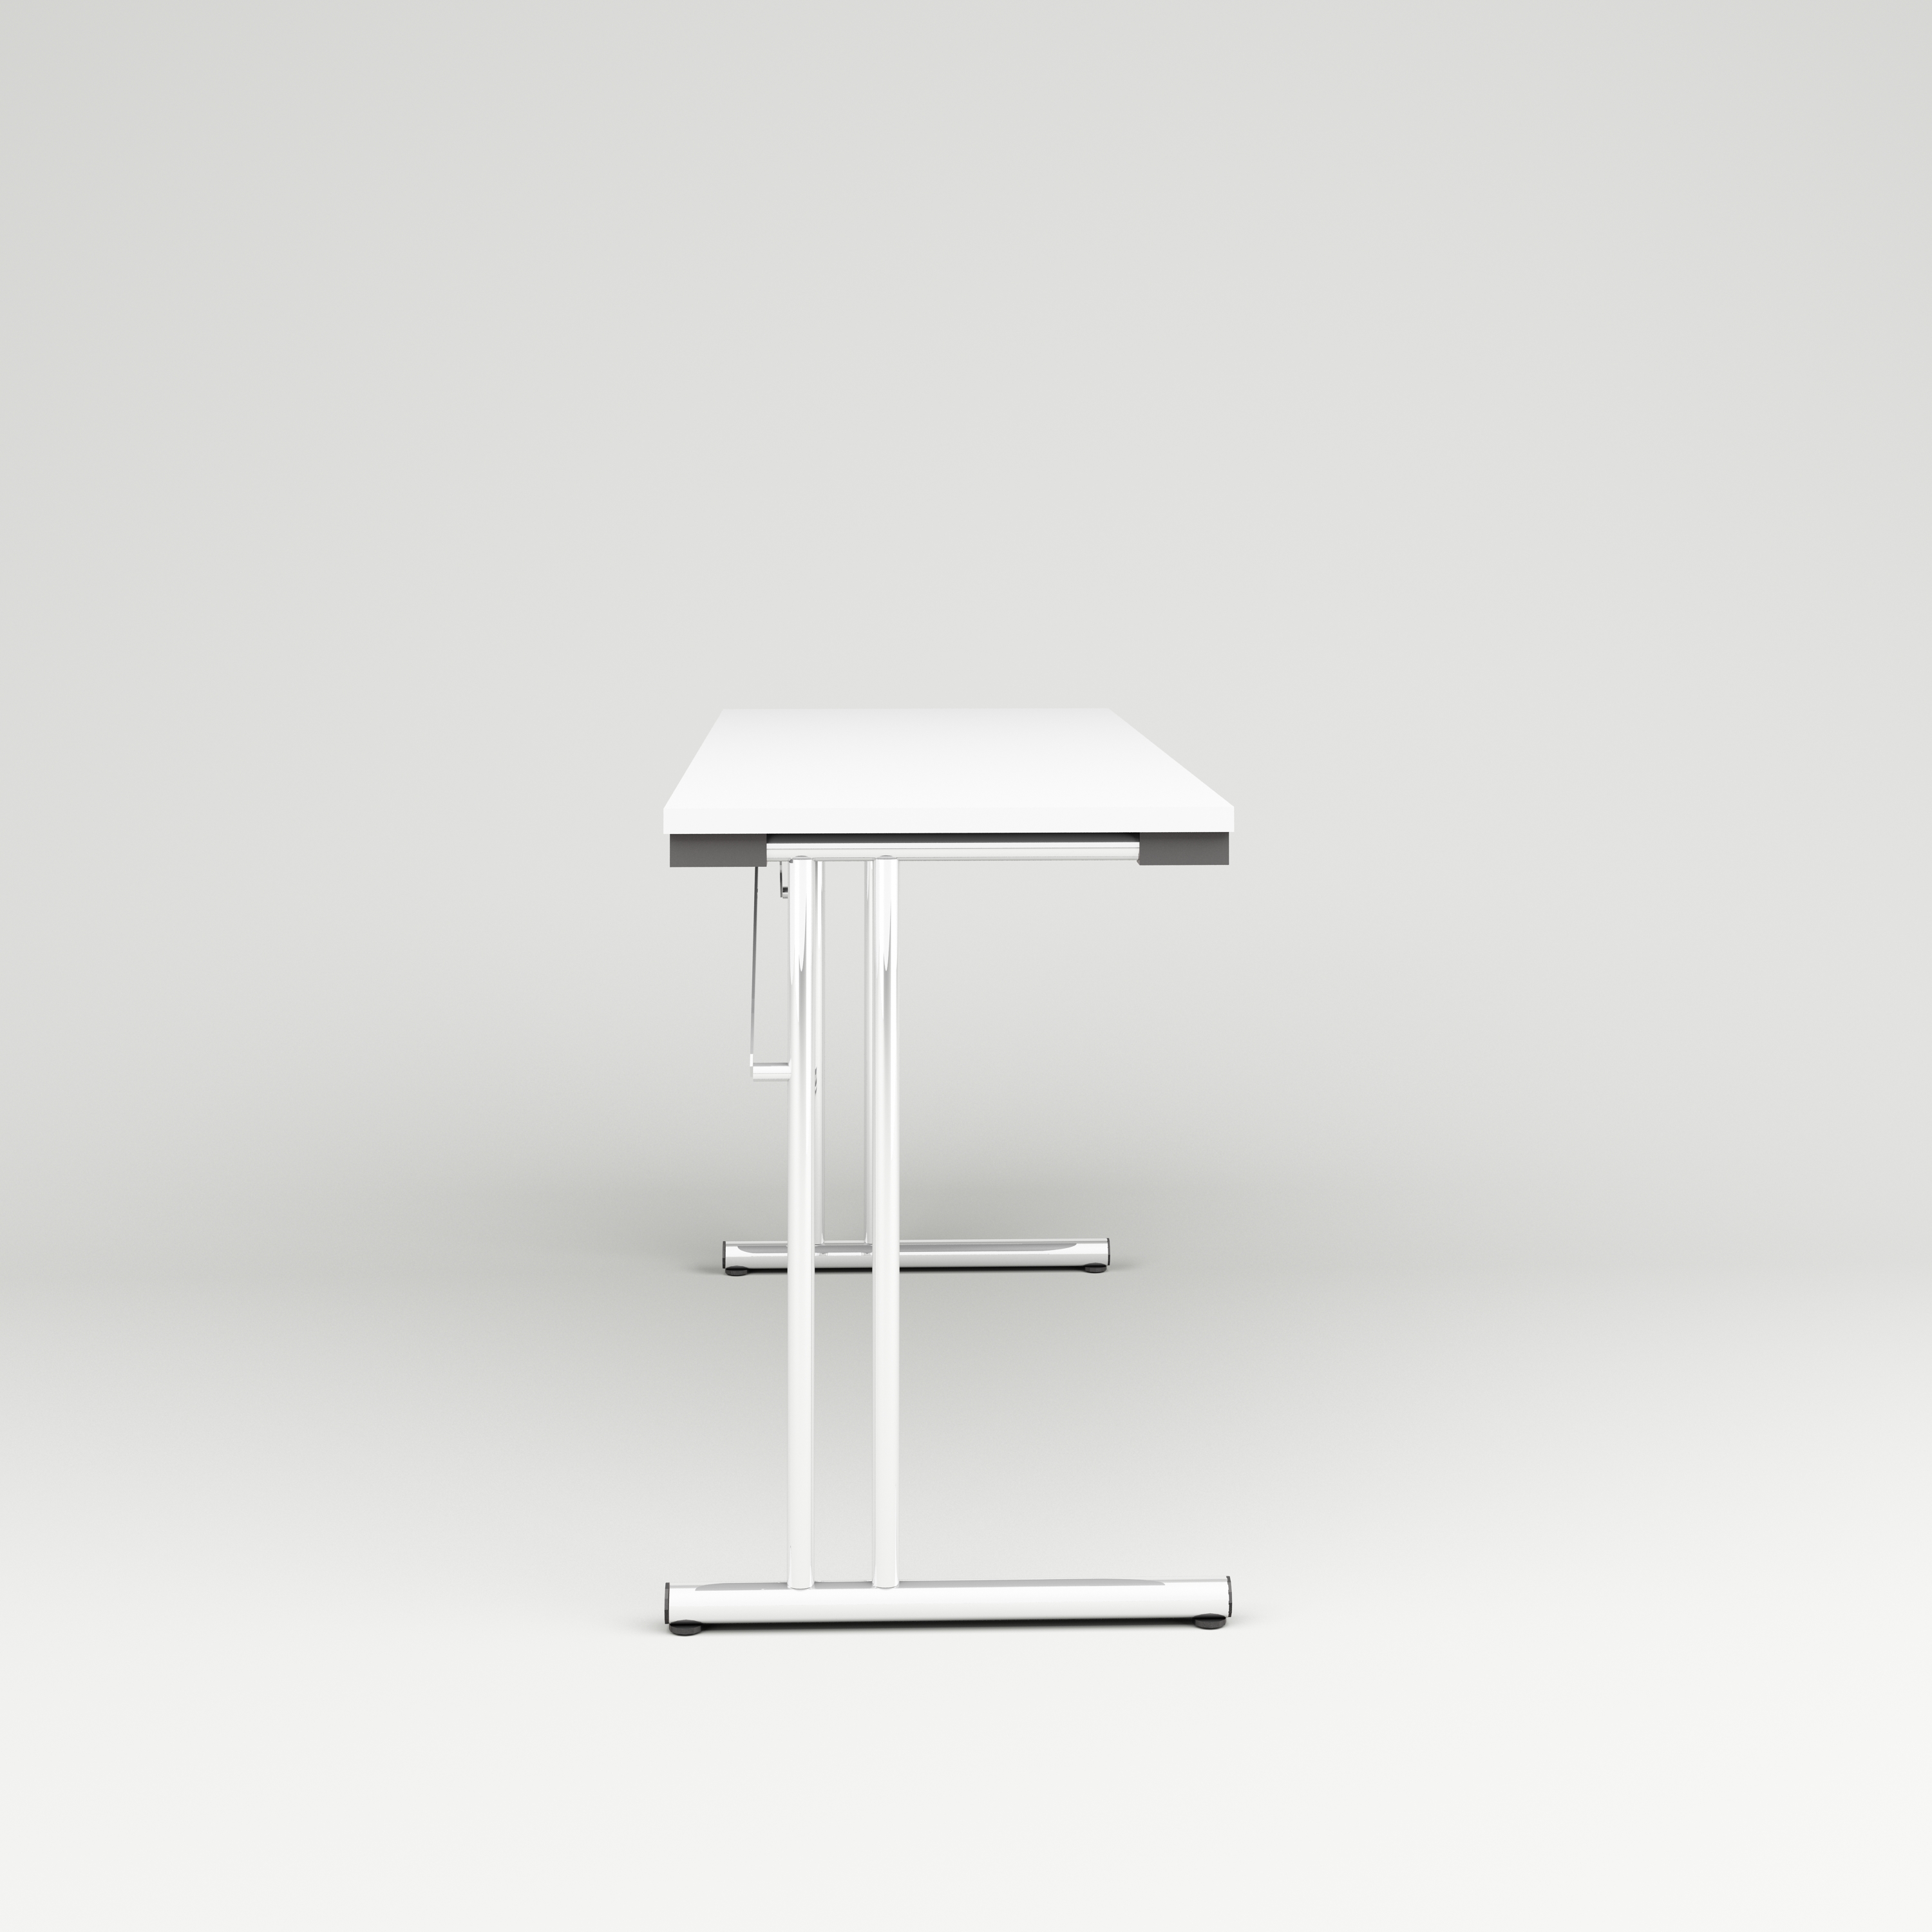 Folding table Allround, 1400x520, white laminate, chrome